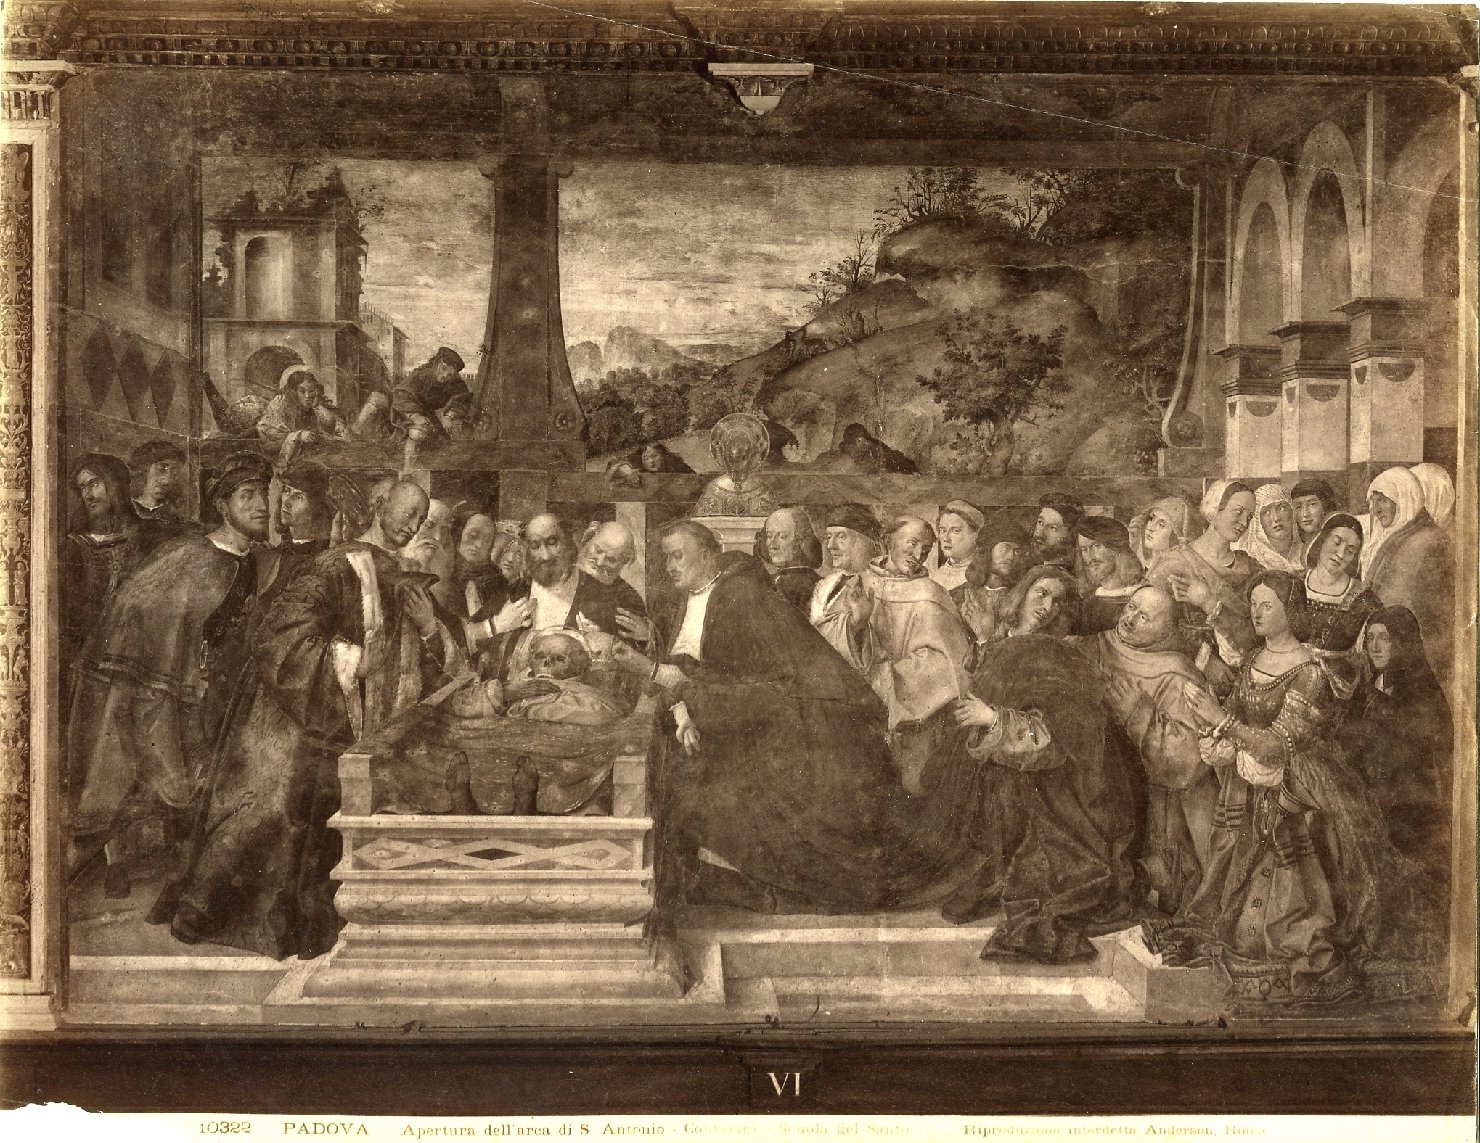 Apertura dell'arca di Sant'Antonio - Dipinti (positivo) di Contarini, Giovanni, Anderson, Domenico (ditta) (XIX/ XX)